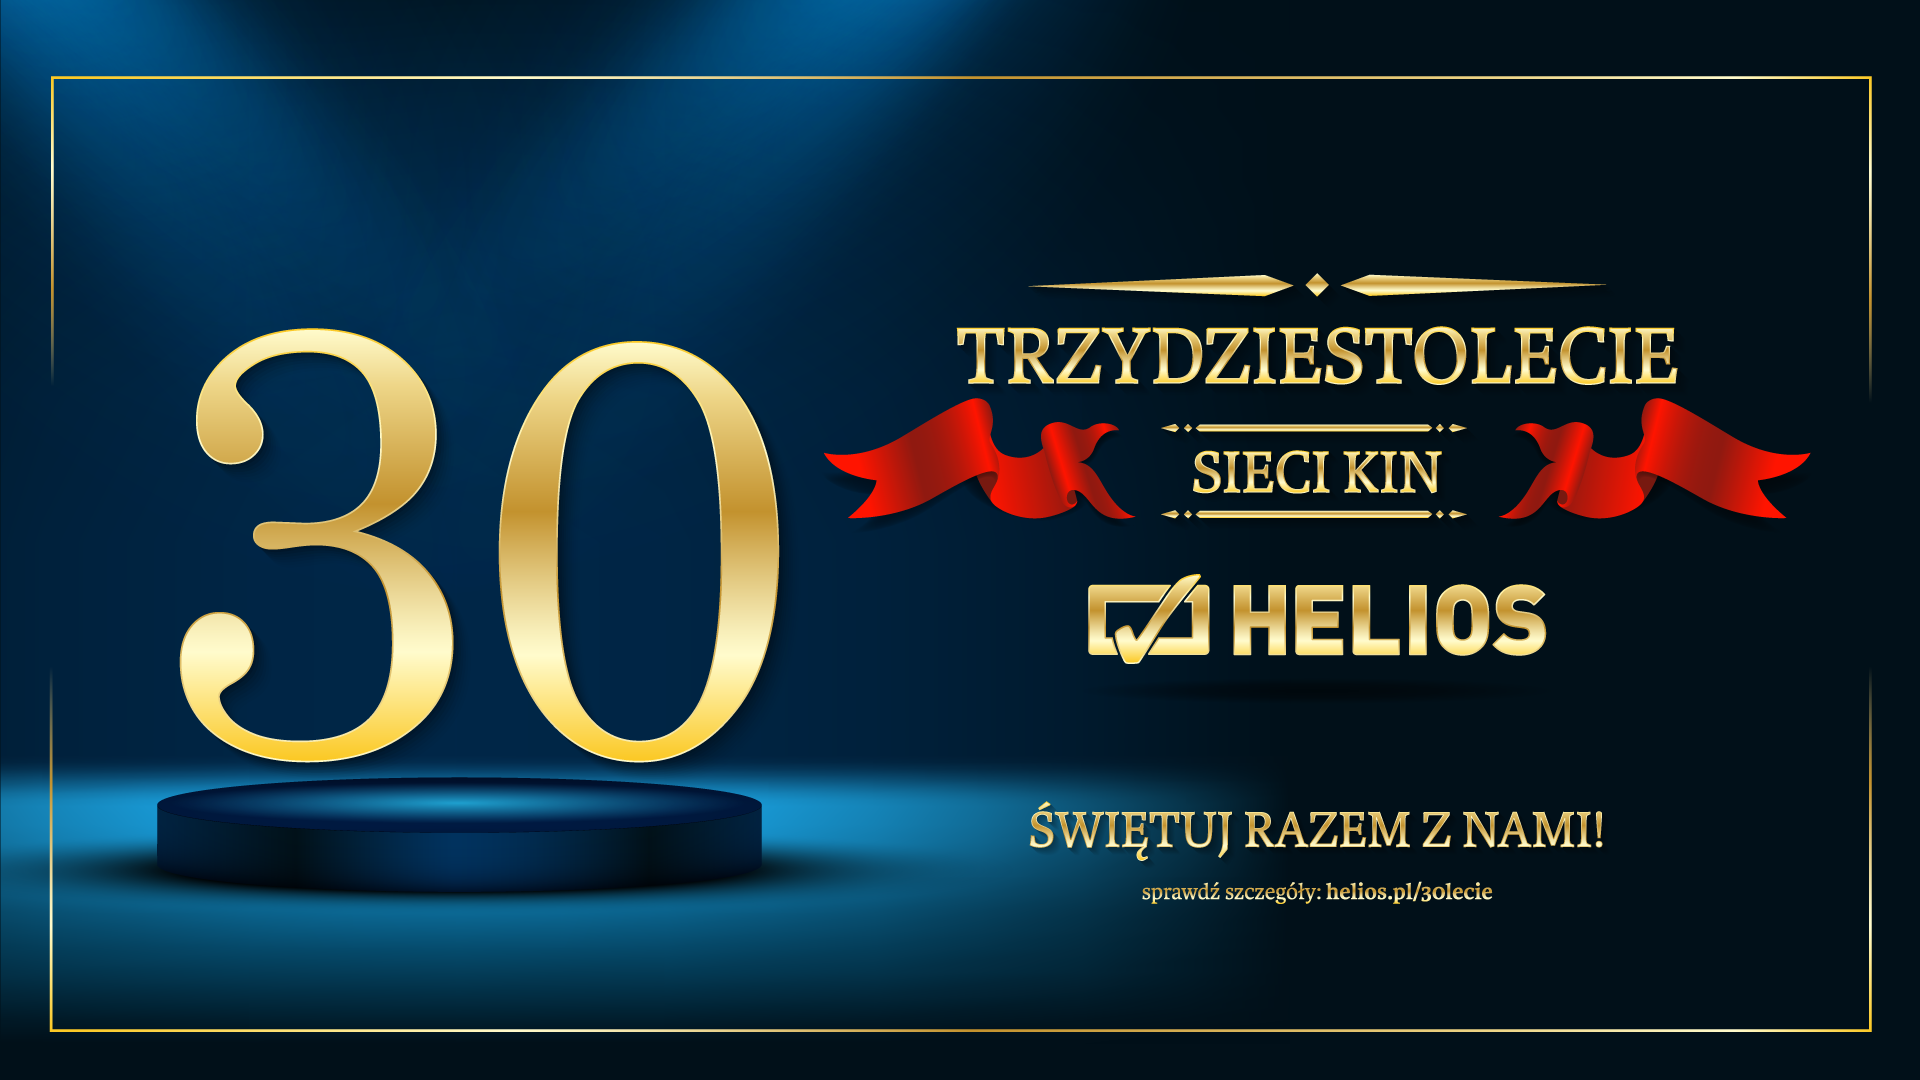 Sieć kin Helios świętuje 30-lecie działalności